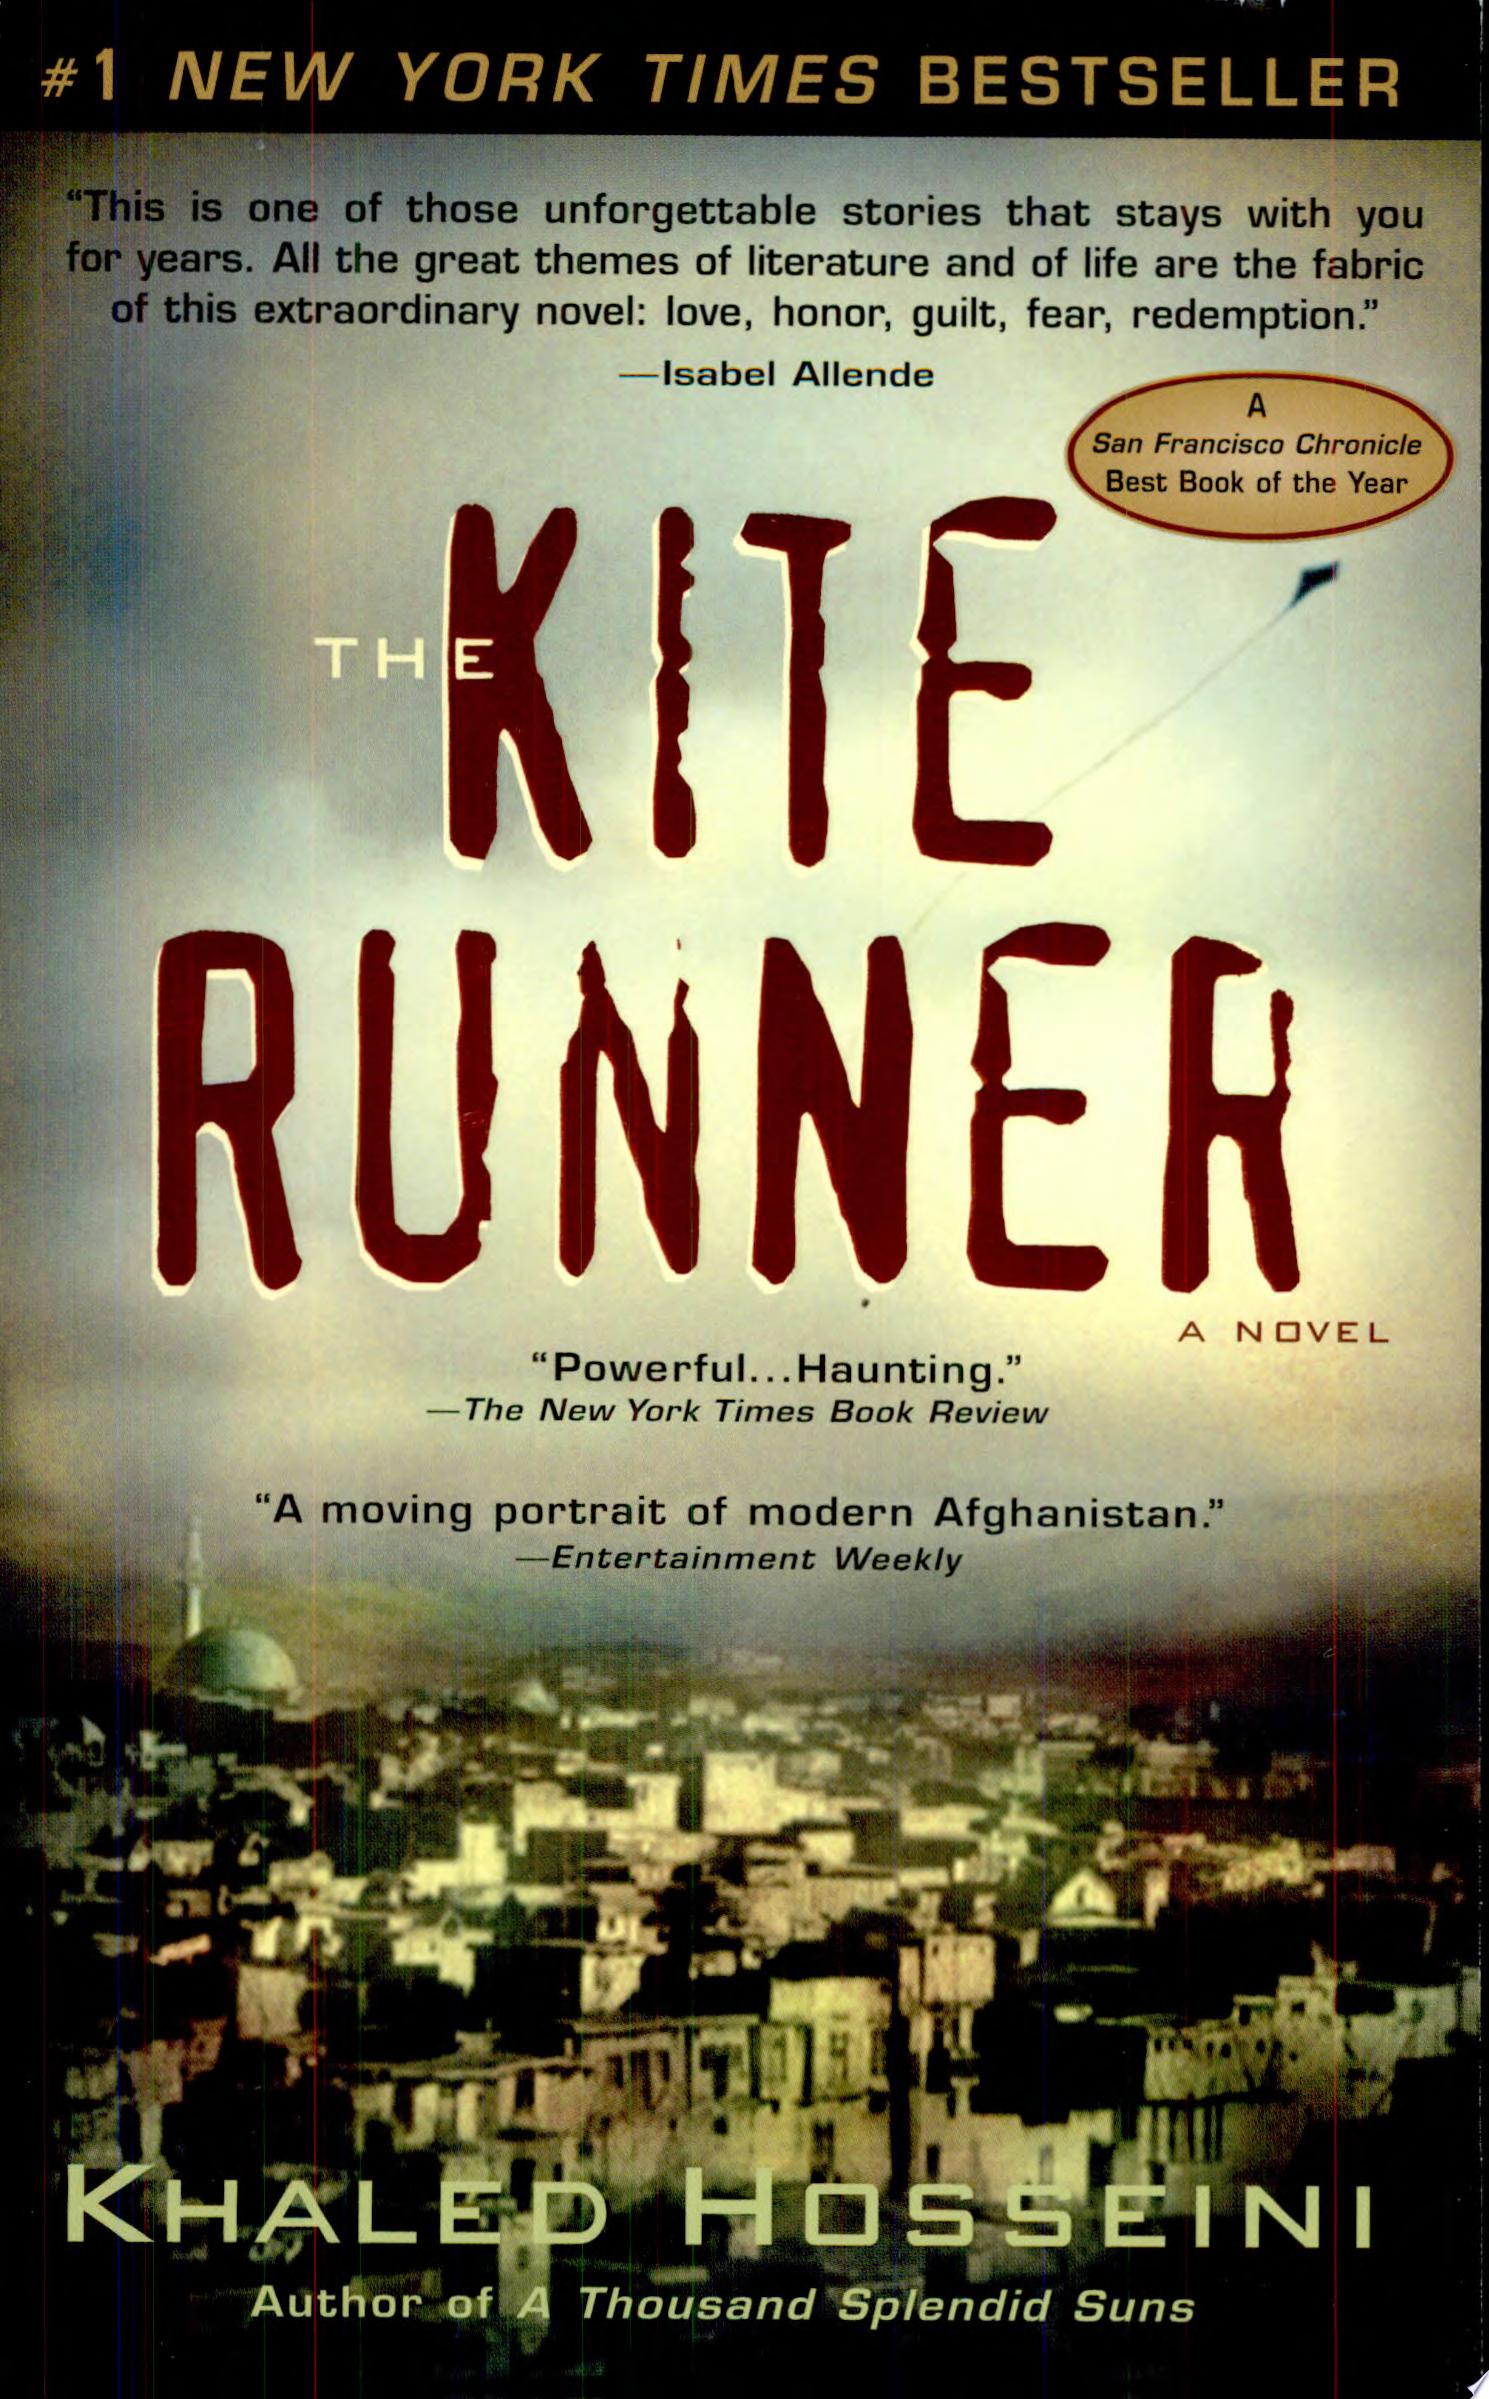 Image for "The Kite Runner"